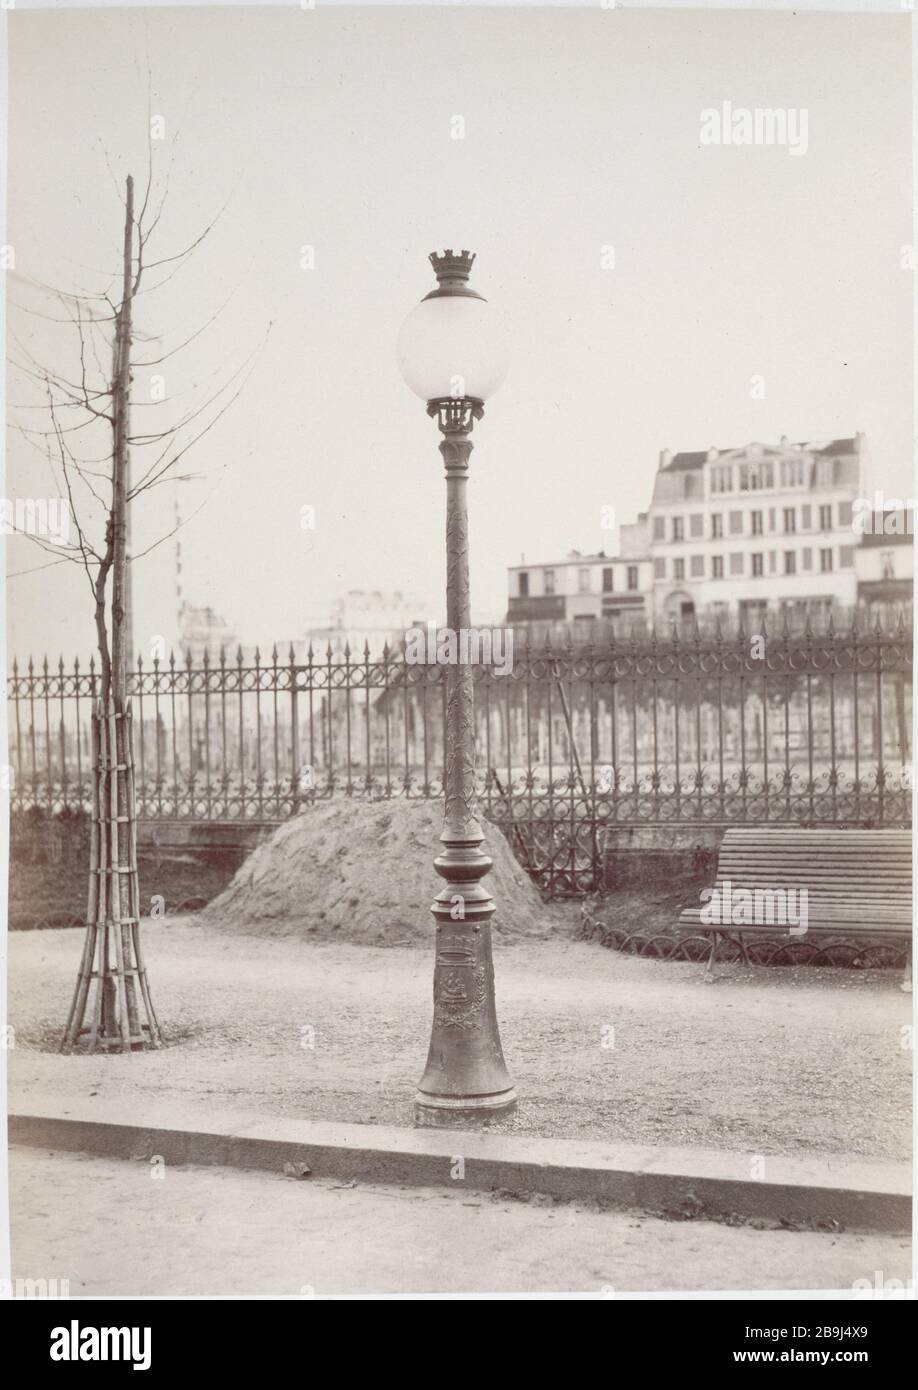 ALBUM FURNITURE Charles Marville (1813-1879). 'Album mobilier urbain : Réverbère', vers 1865. Paris, musée Carnavalet. Stock Photo